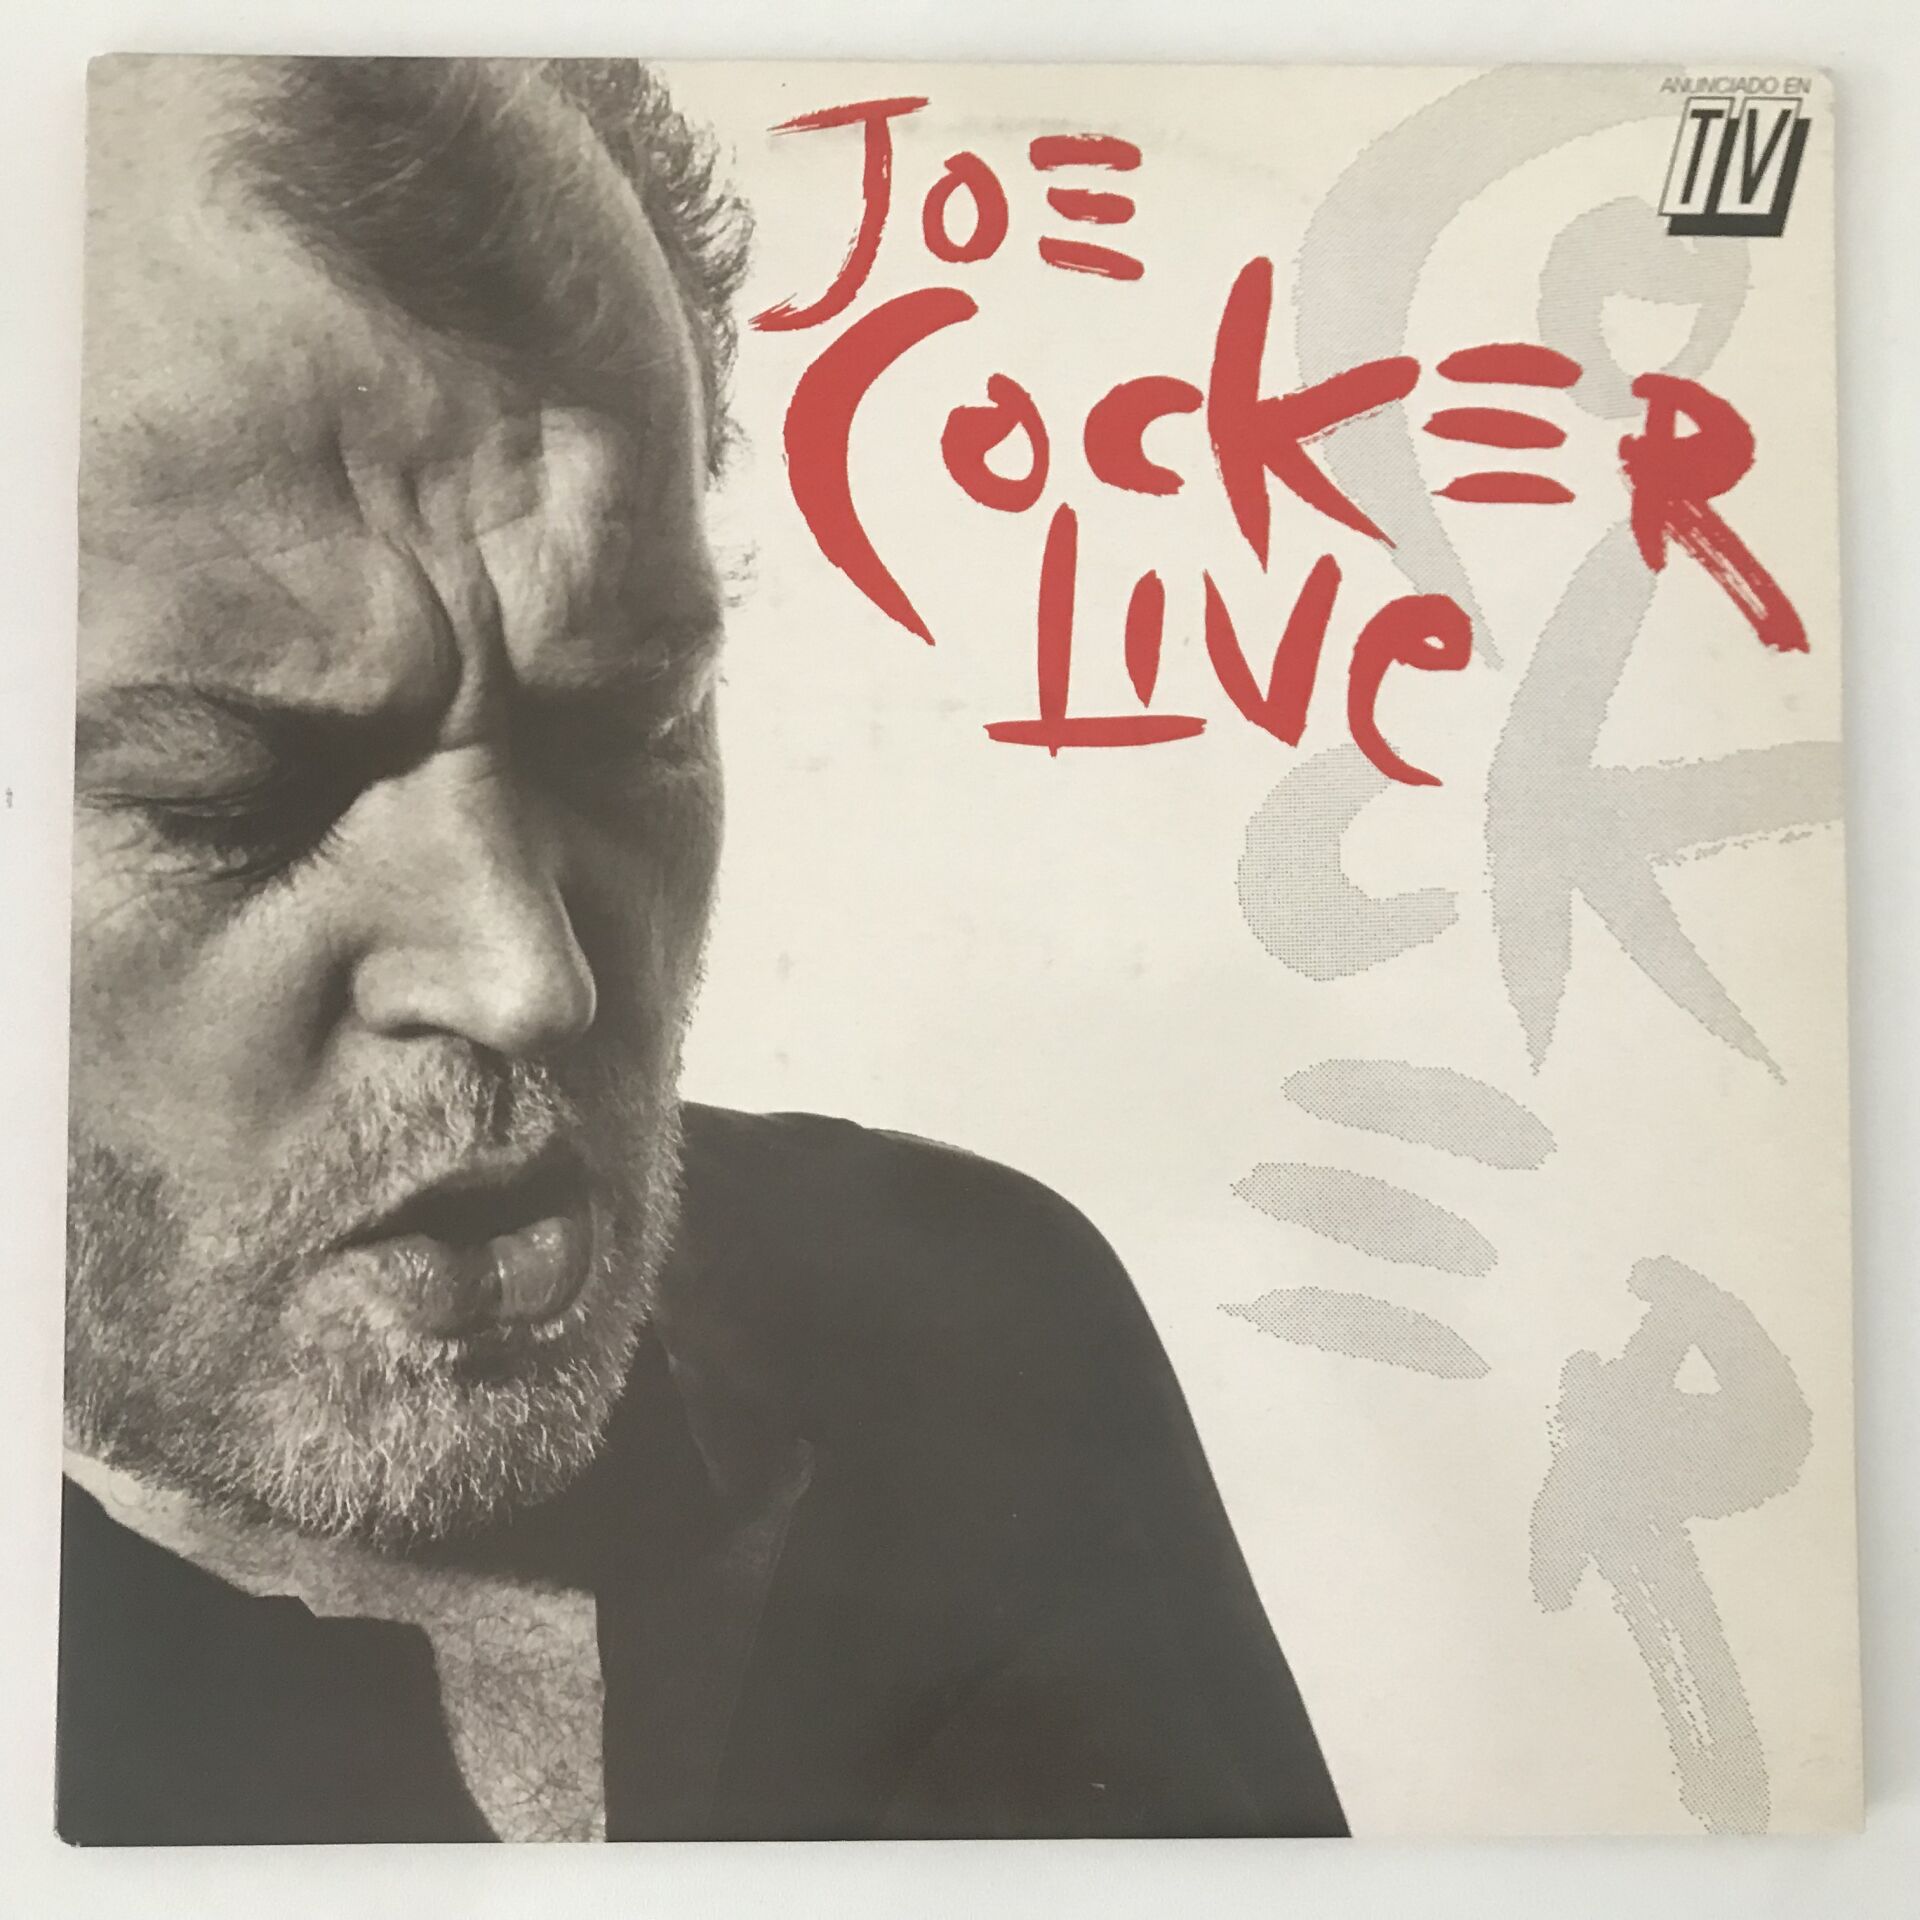 Joe Cocker – Joe Cocker Live 2 LP